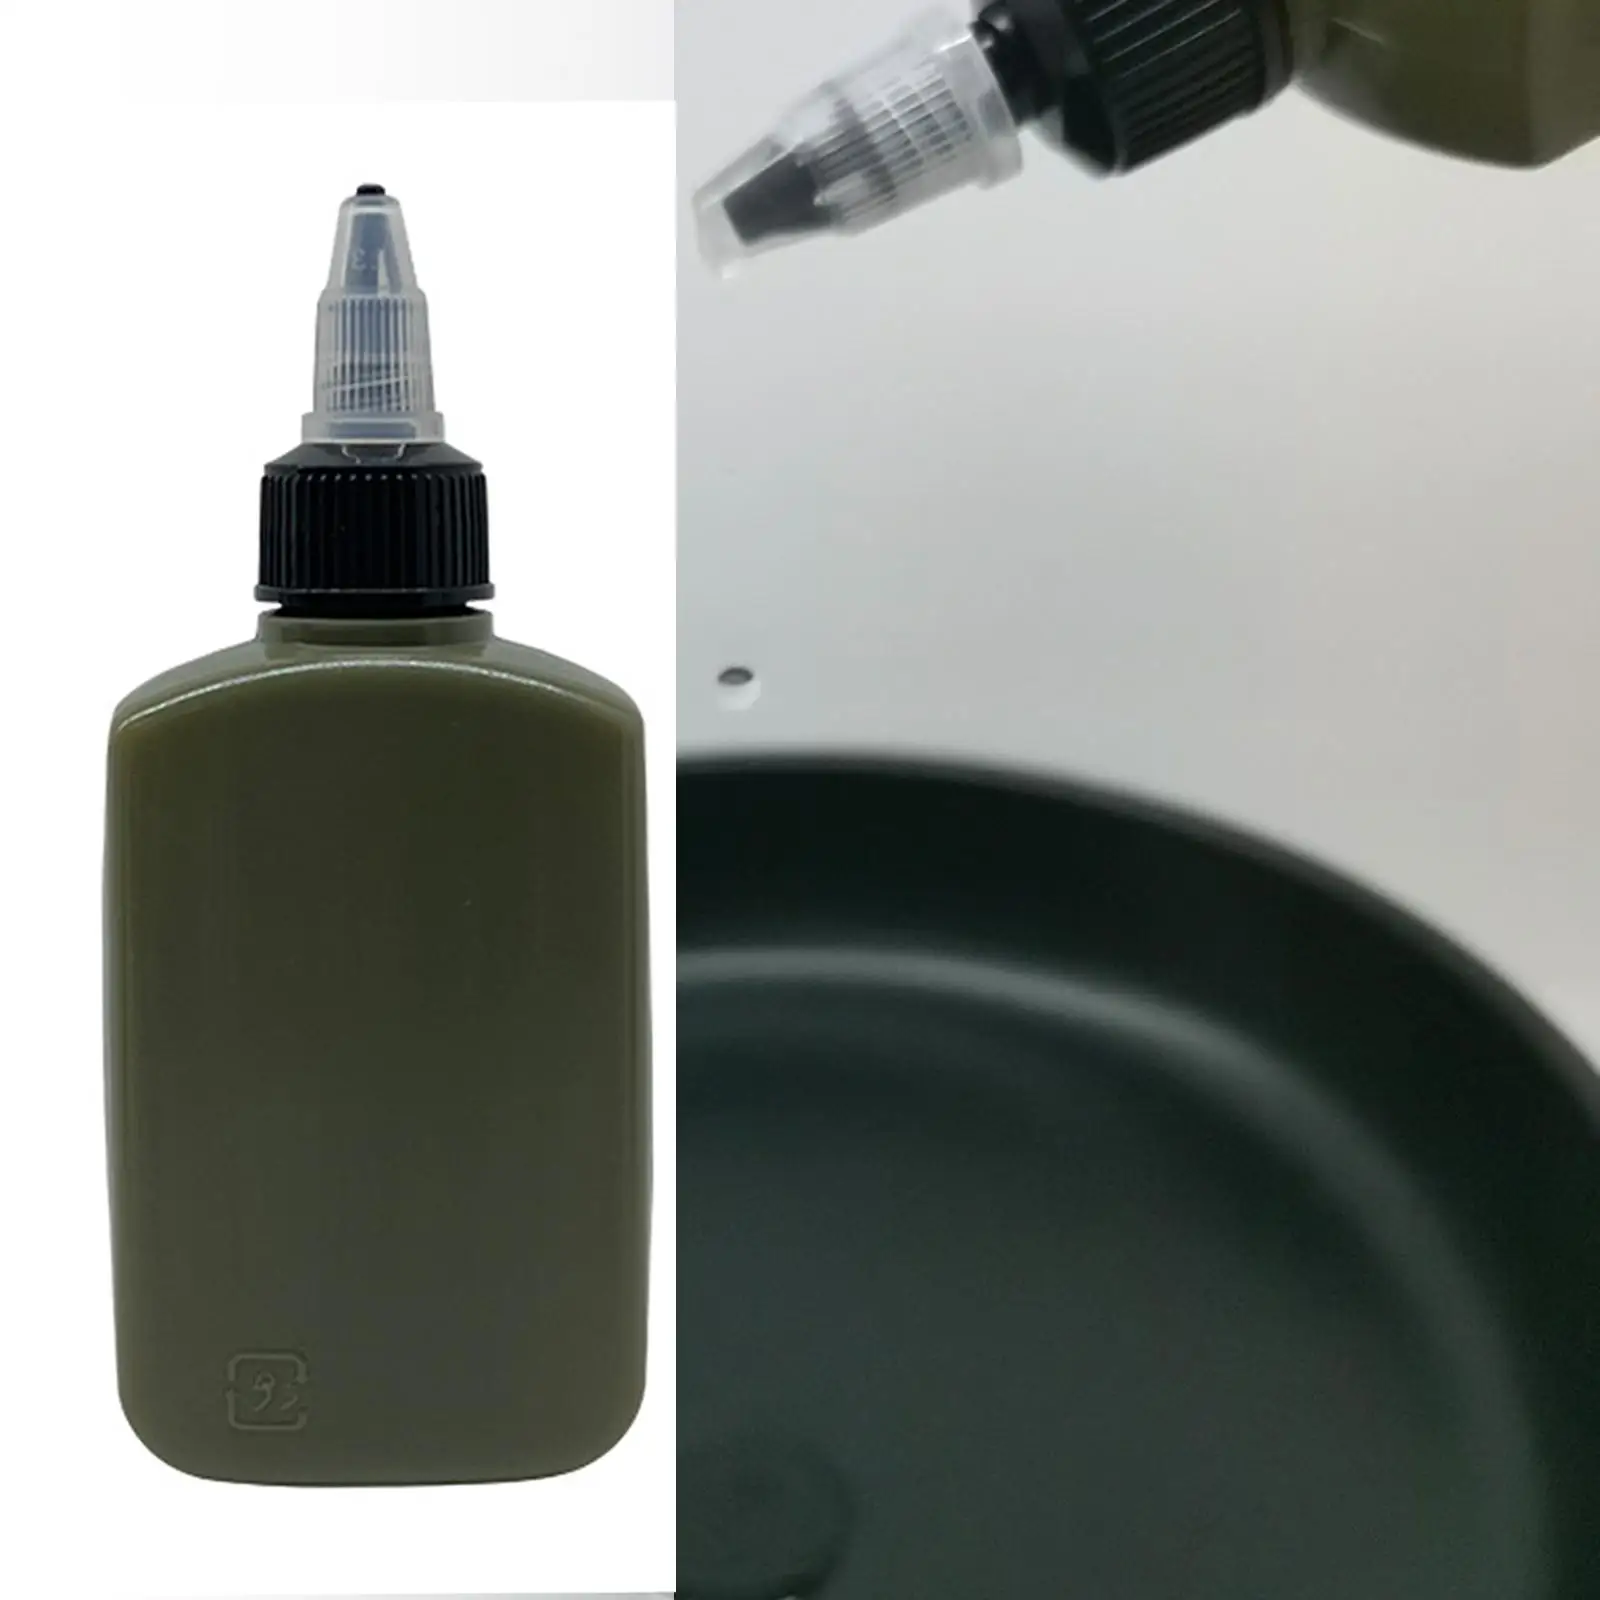 Outdoor Oil Bottle Dispenser Bottle Sauce Oil Pot for Cooking Picnic